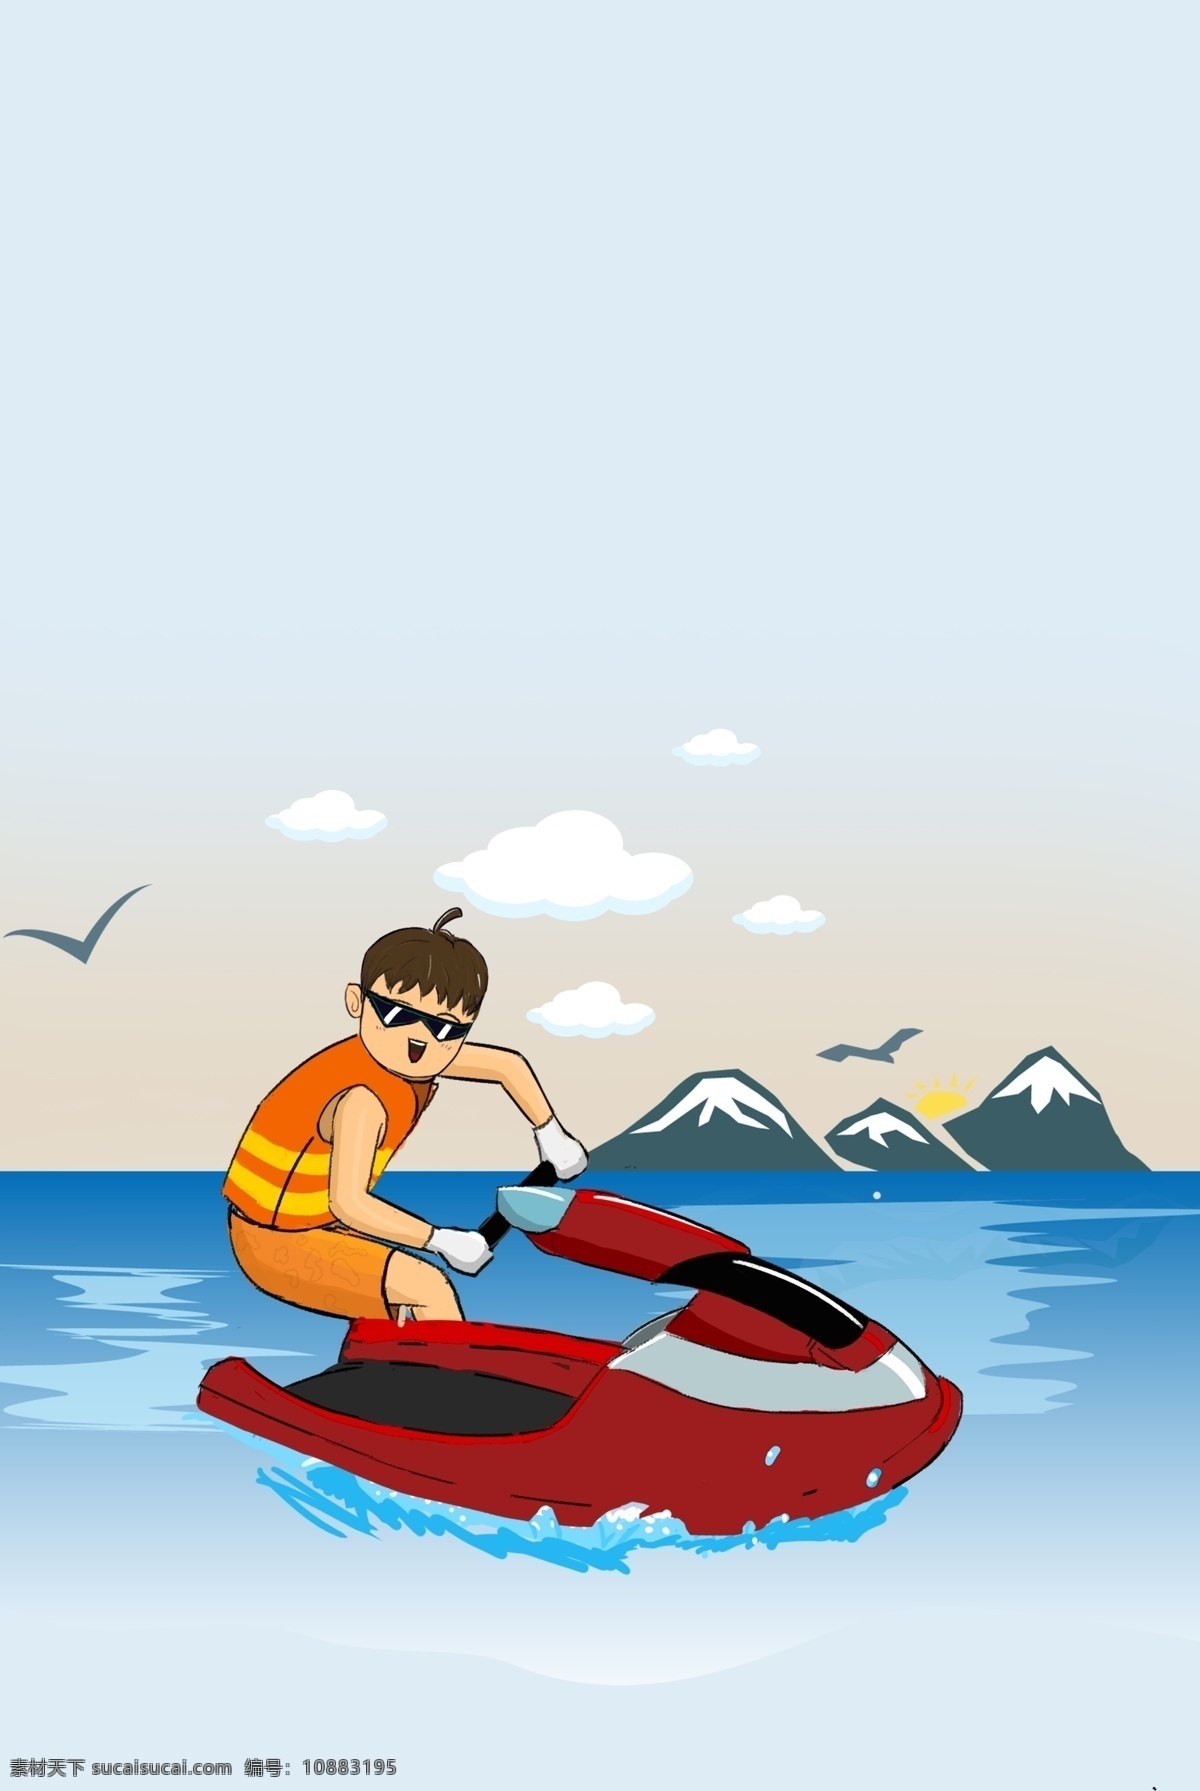 健康生活 海上 运动 摩托艇 背景 休闲生 度假 大海 摩托艇冲浪 海 山